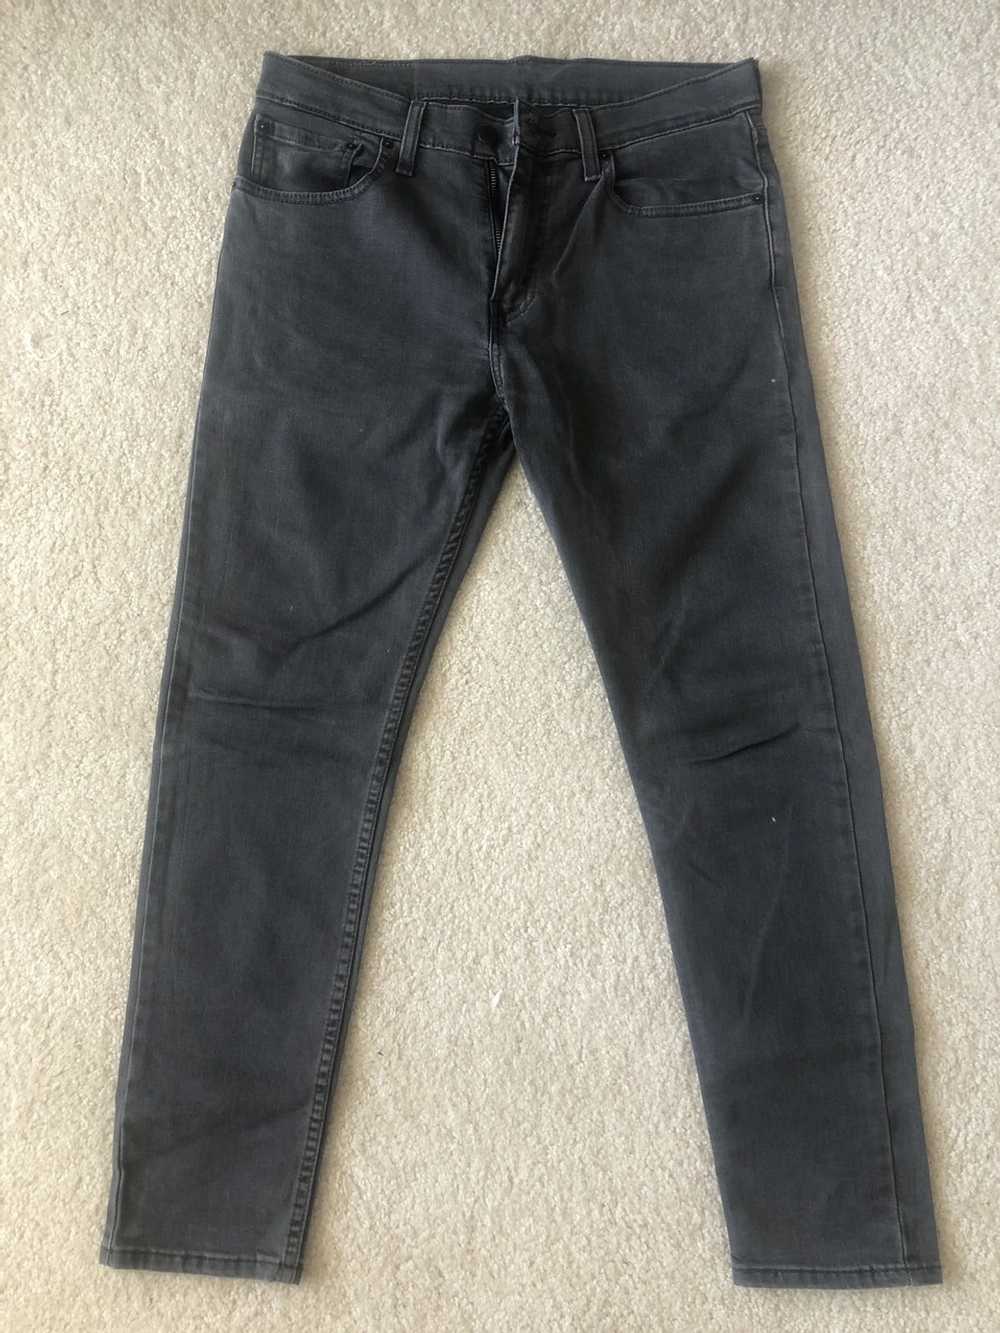 Levi's 512 jeans - image 1